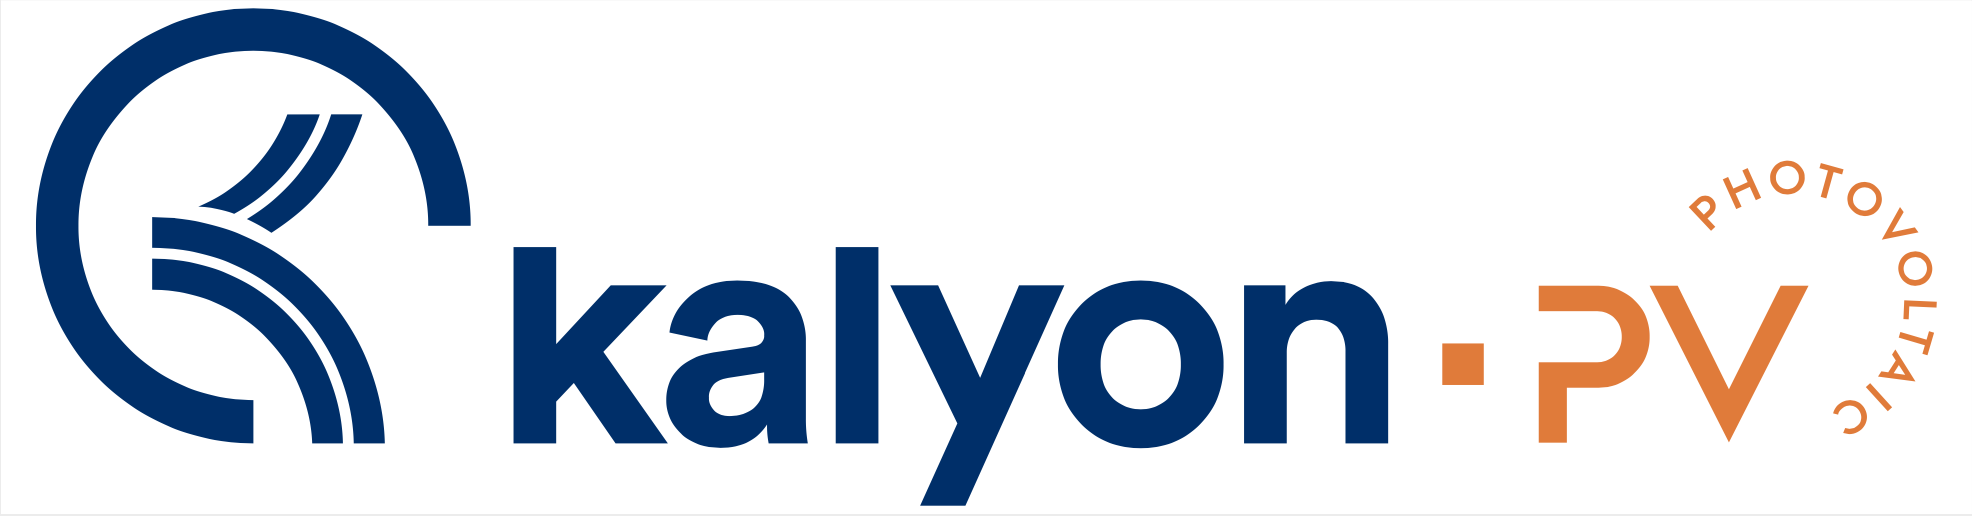 kalyon pv logo